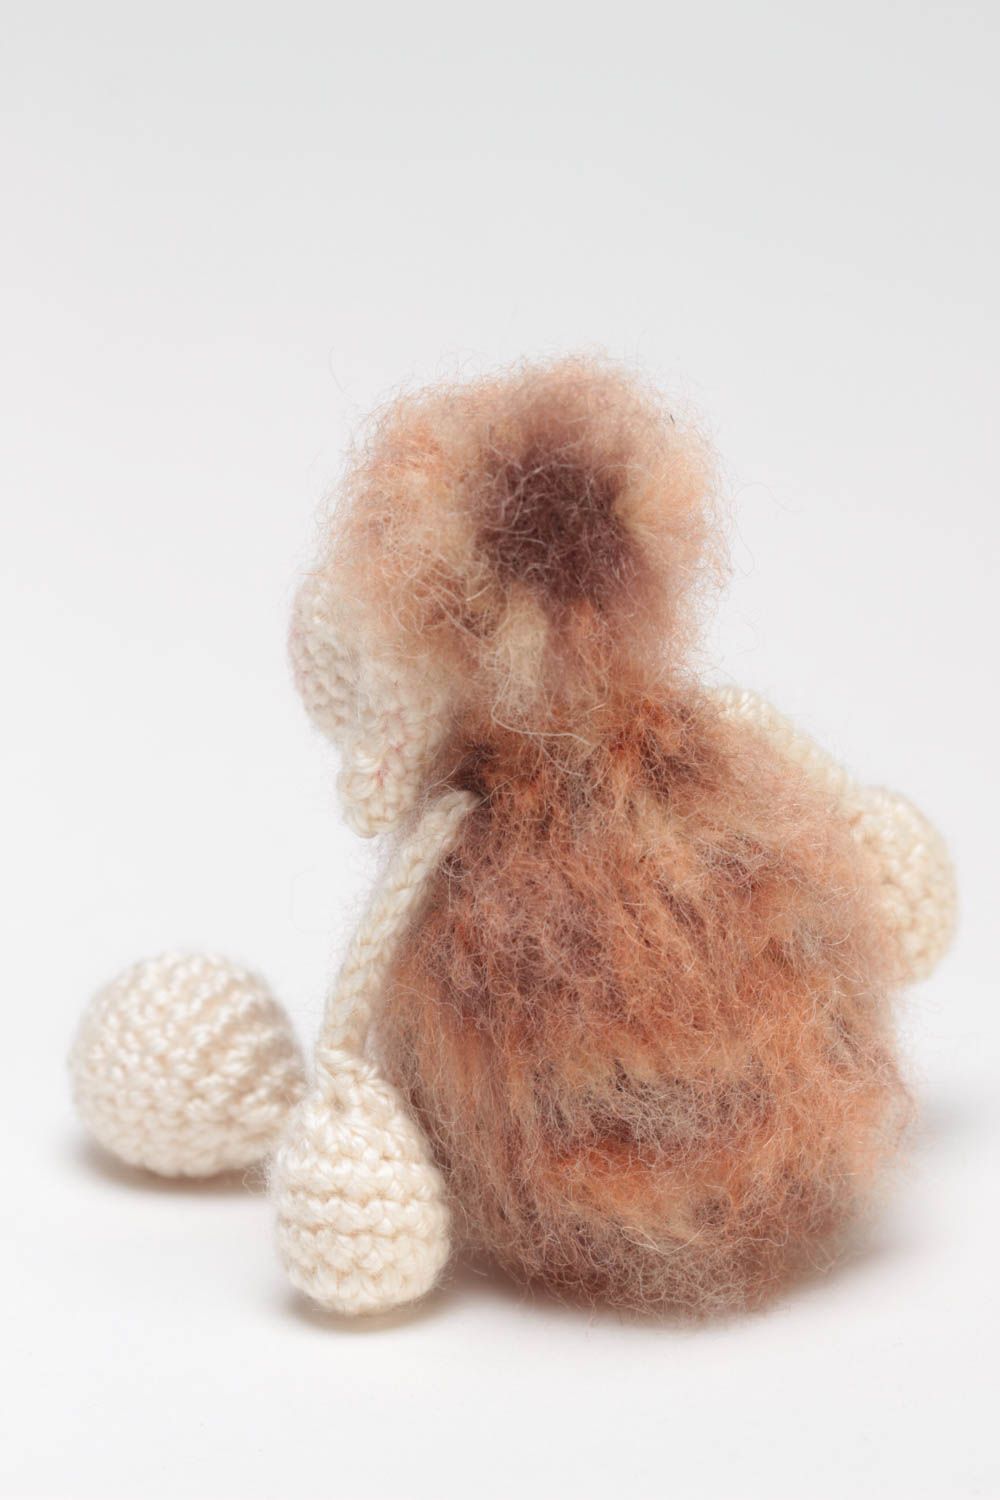 Peluche brebis faite main tricotée au crochet douce petite jouet pour enfant photo 4